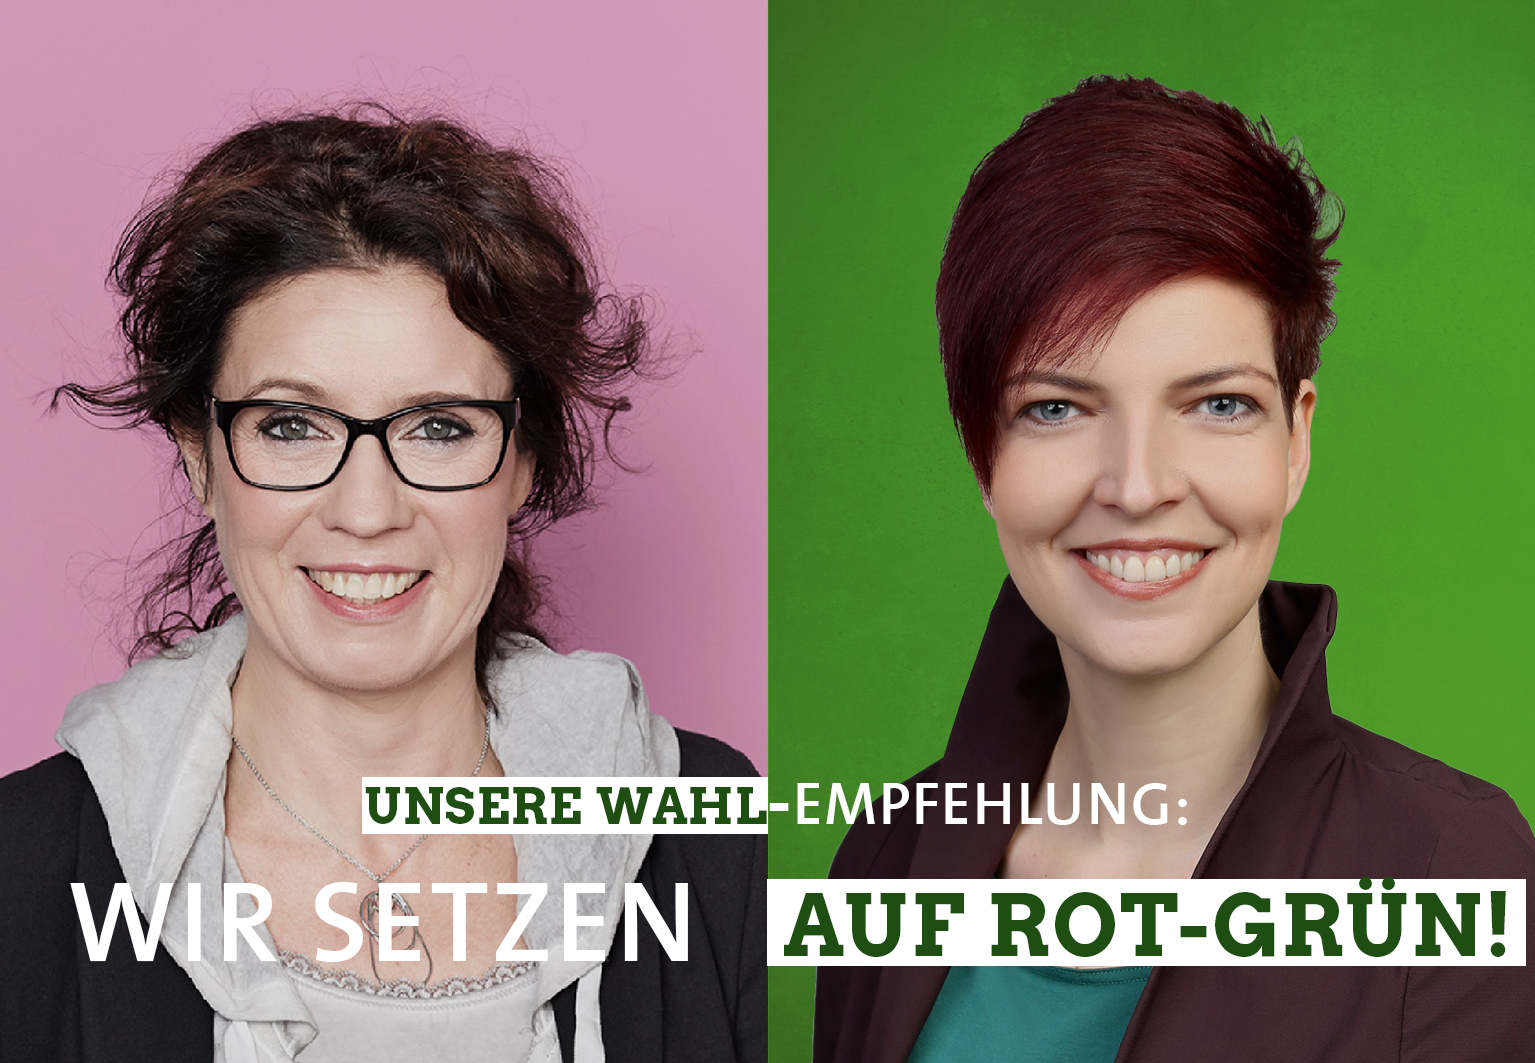 Susanne Kohlmeyer und Wibke Brems setzen auf rot-grün